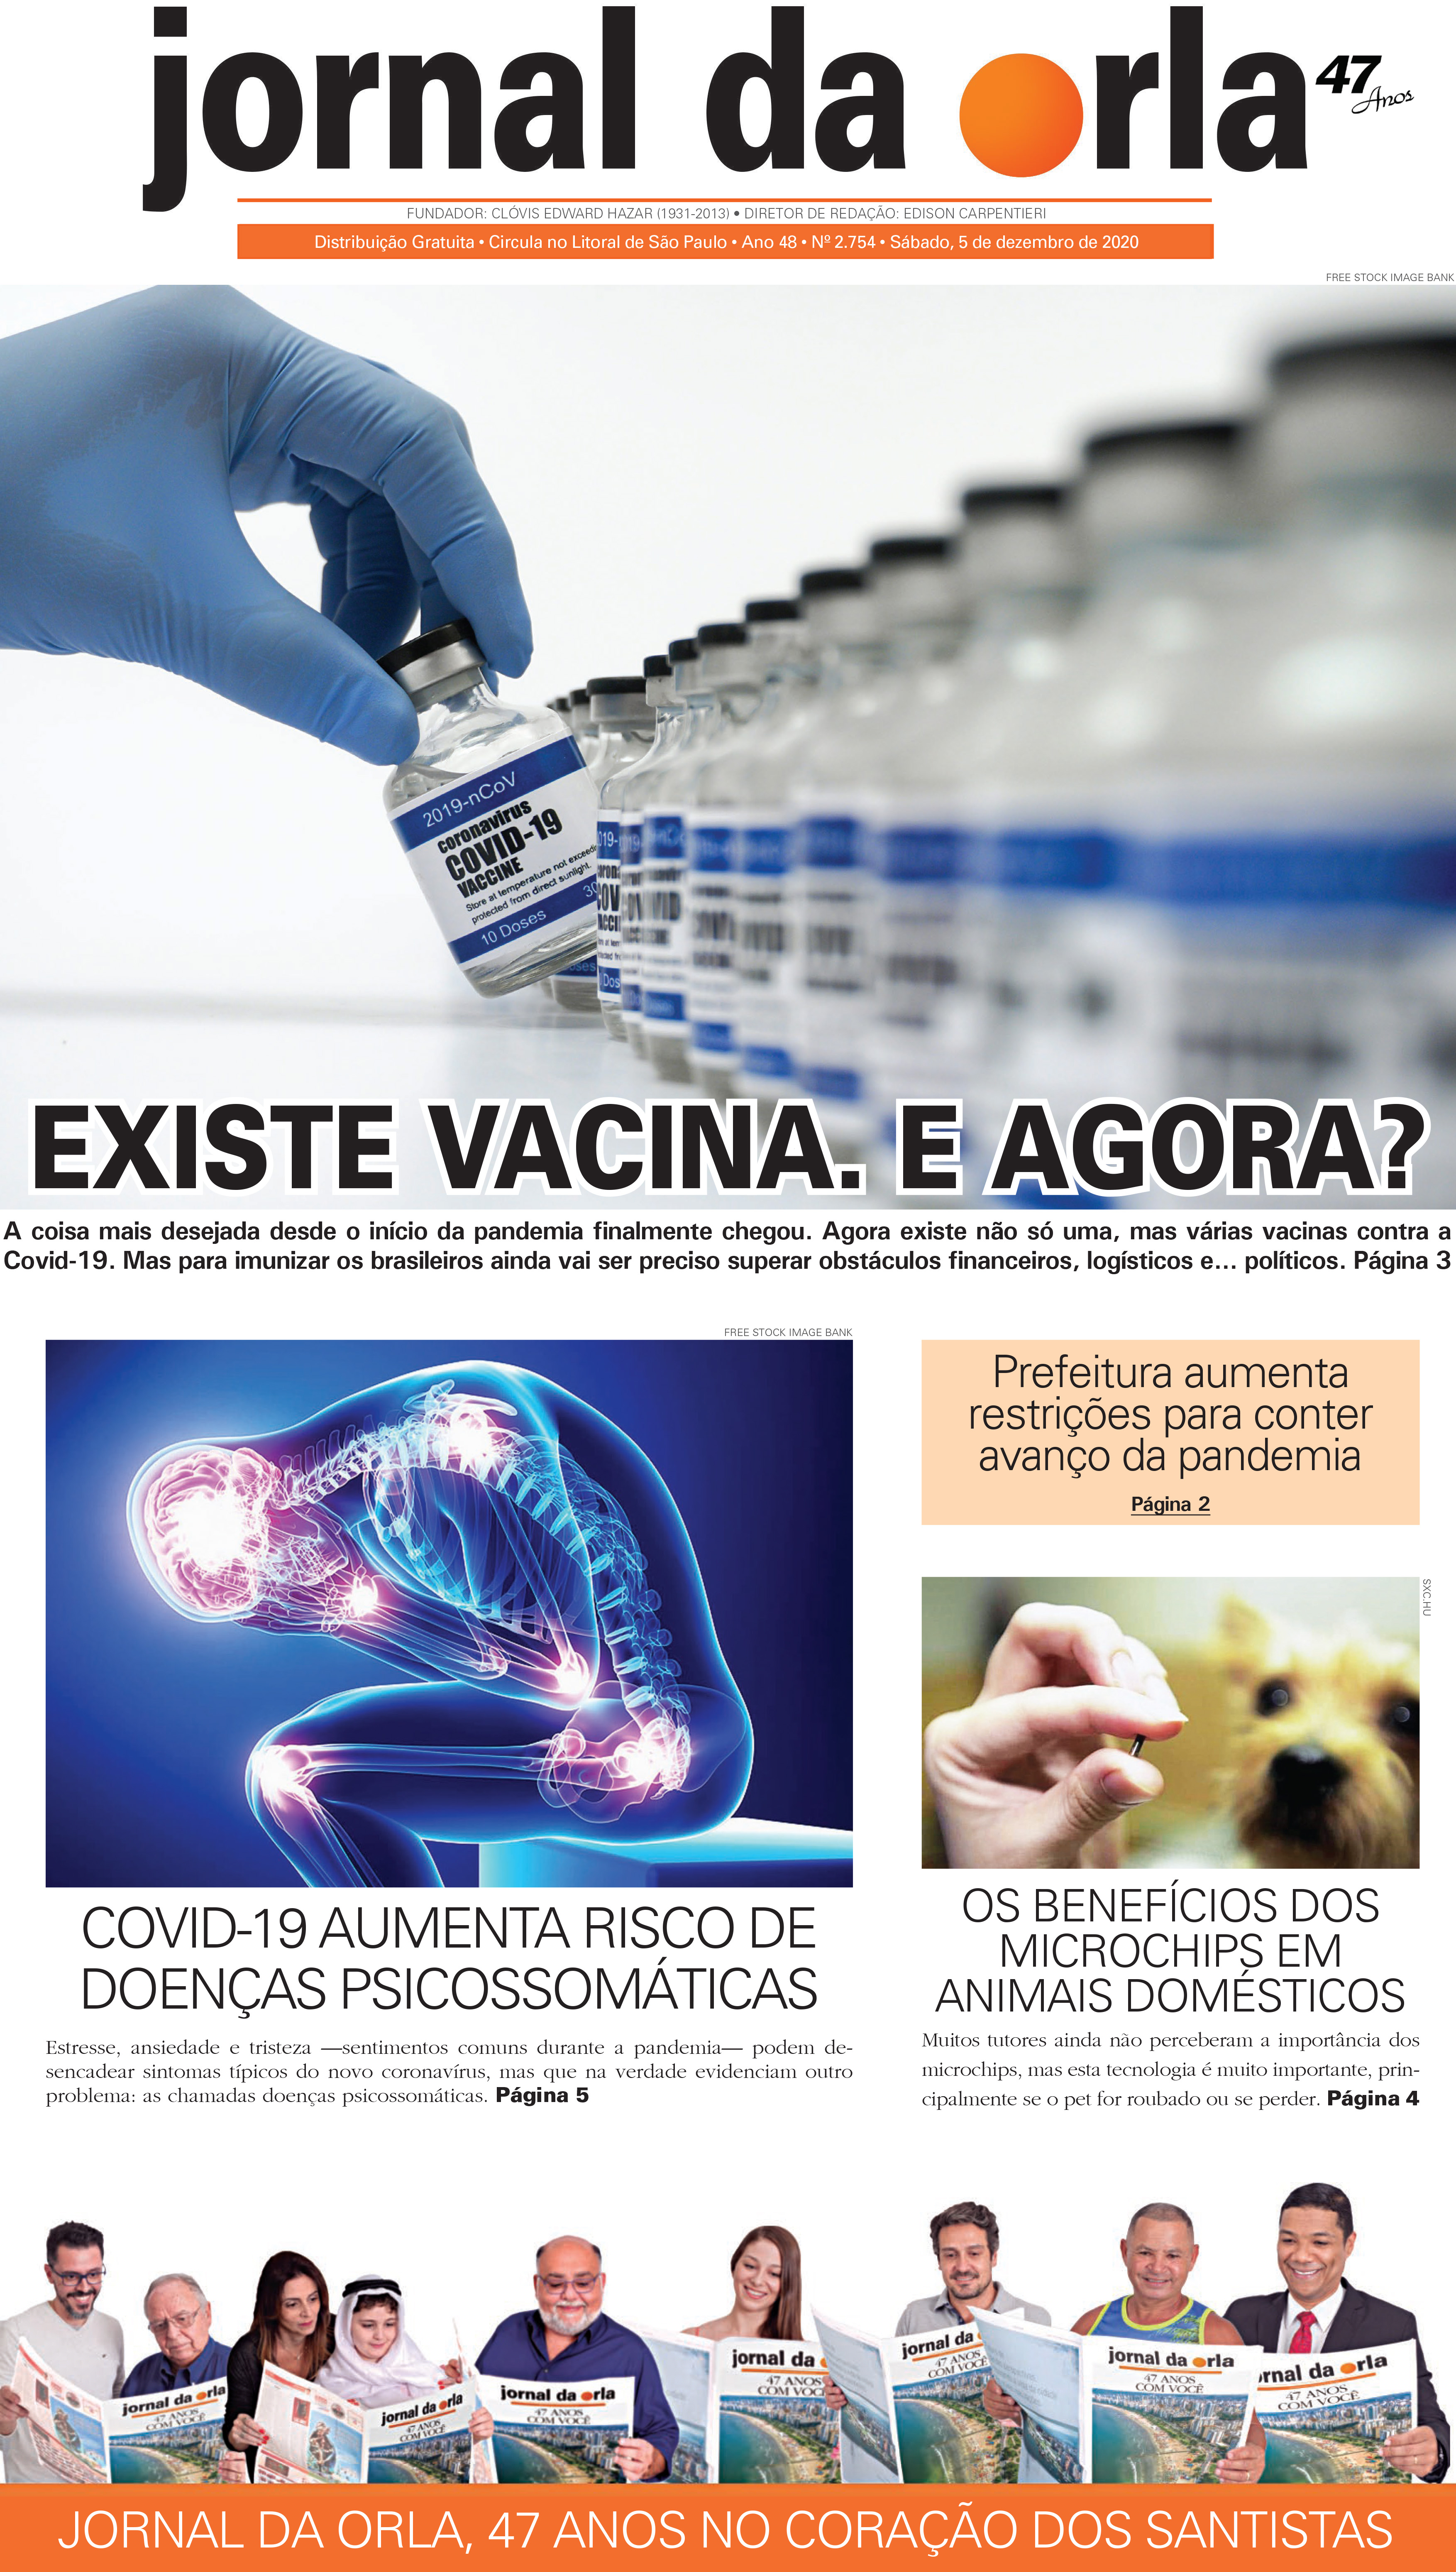 05/12/2020 | Jornal da Orla